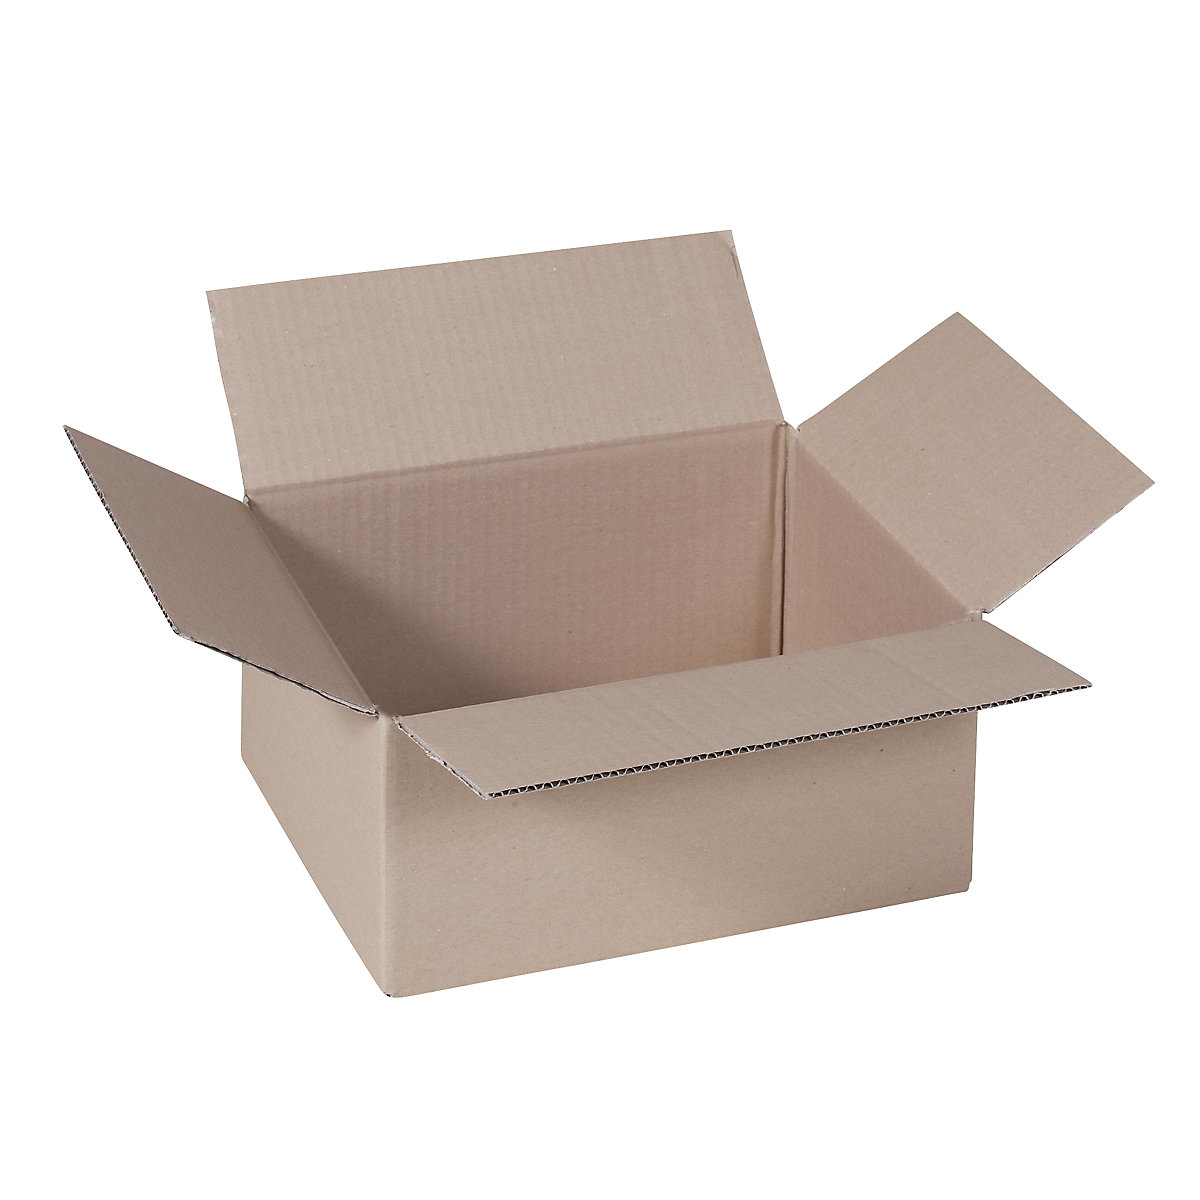 Cutie de carton pliantă, FEFCO 0201, cu 1 strat de carton ondulat, dimensiuni interioare 430 x 305 x 180 mm, amb. 50 buc.-20